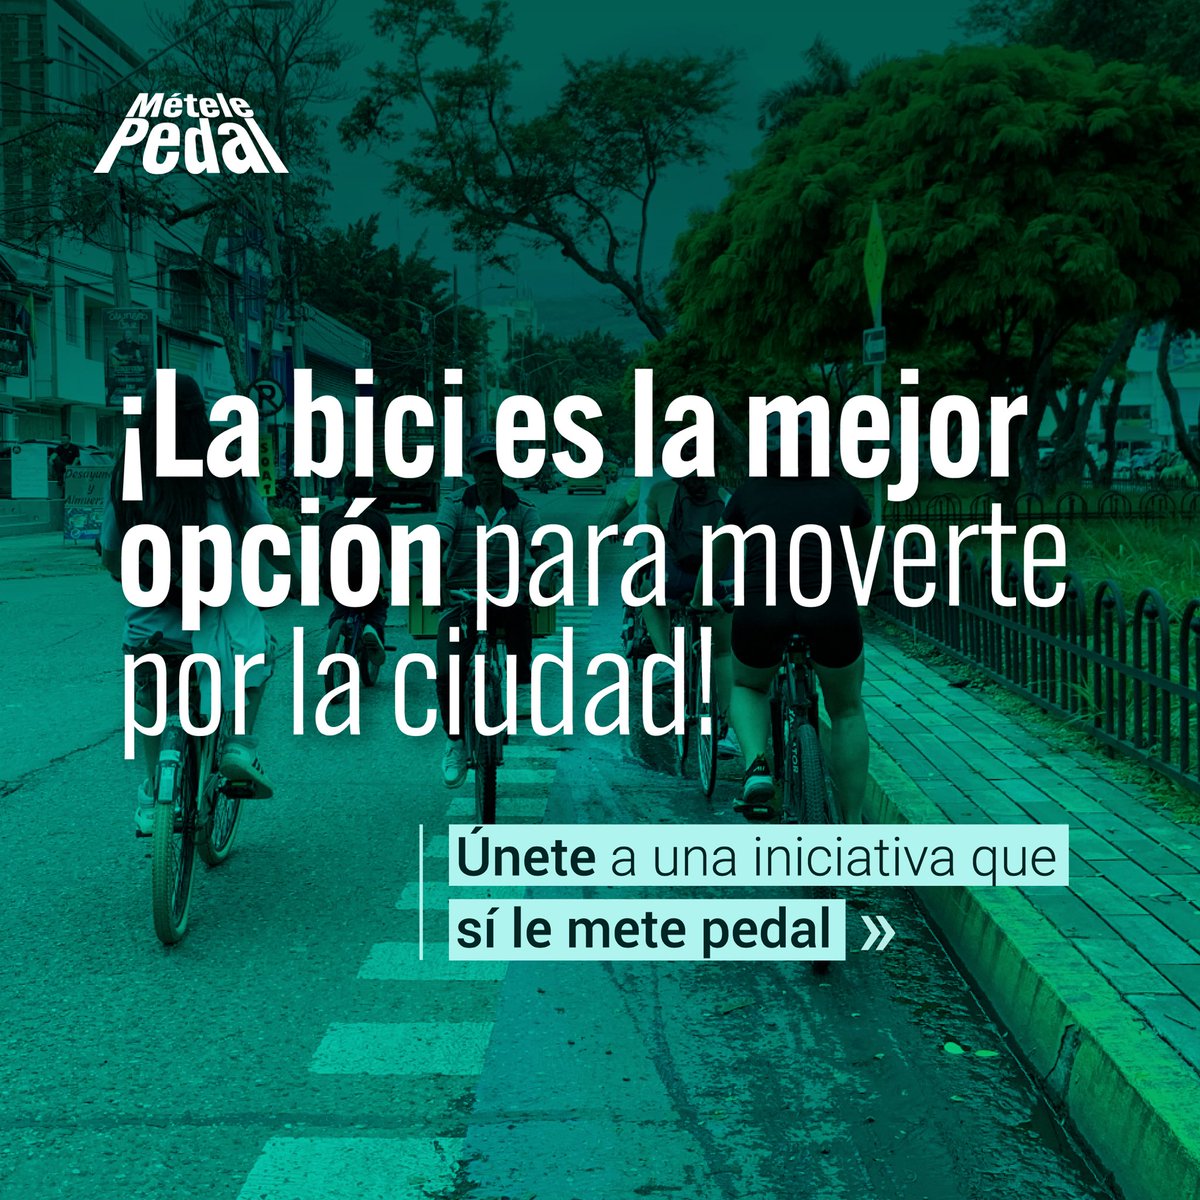 🤔¿Cuál es el mejor medio de transporte? ¡LA BICI! 🚲 Se parte de una iniciativa que promueve un mejor y mayor uso de la bici 😃.

🫵🏽 ¿qué esperas? Únete por la #MovilidadSostenible 🌱.

#SomosMételePedal #LeMetemosPedal #MejorEnBici  #BiciAmigos #BikeLovers